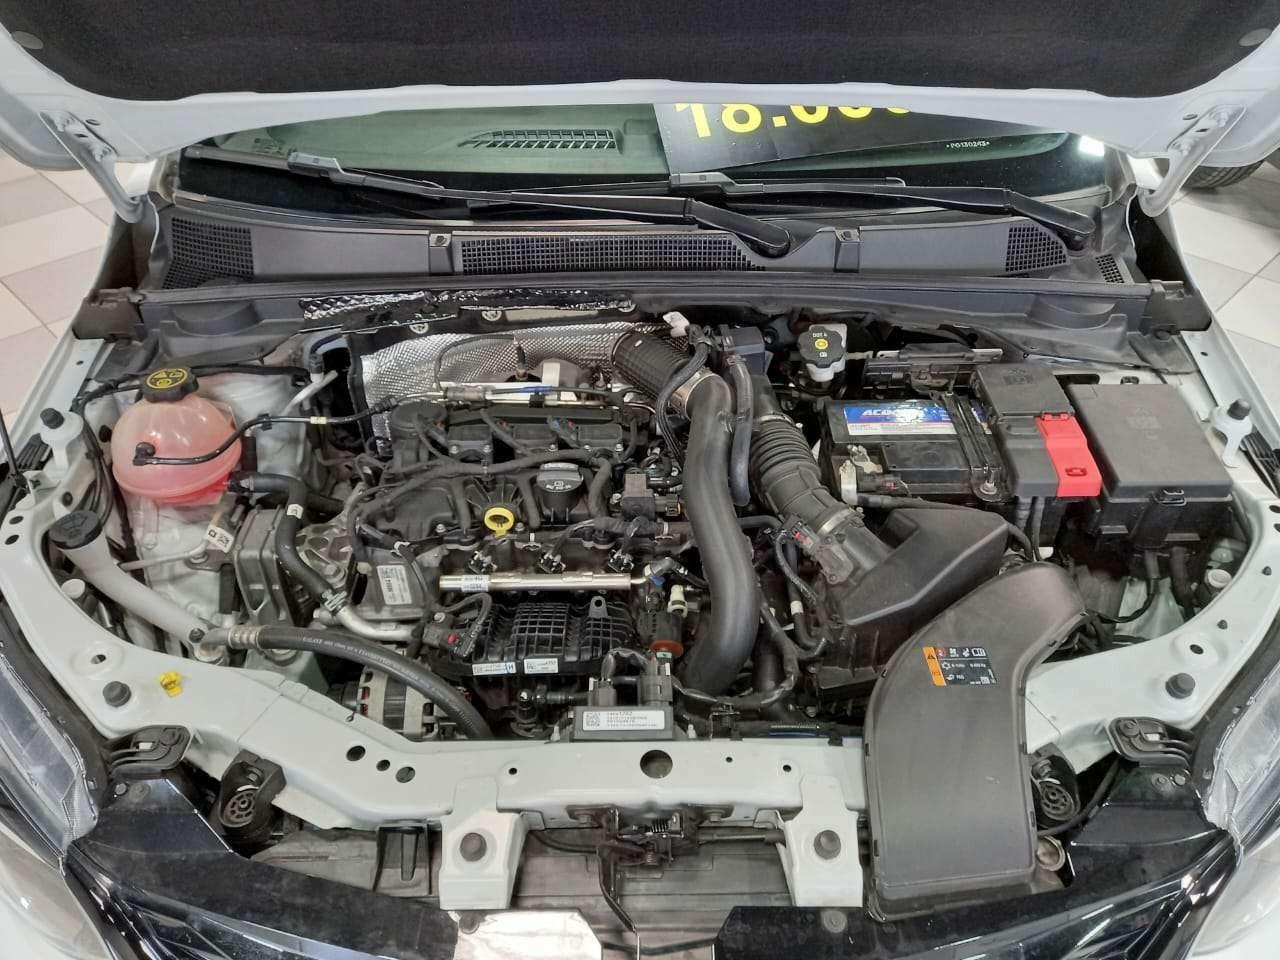 Novo Chevrolet Onix RS 2020 Turbo Flex: fotos divulgadas antes do